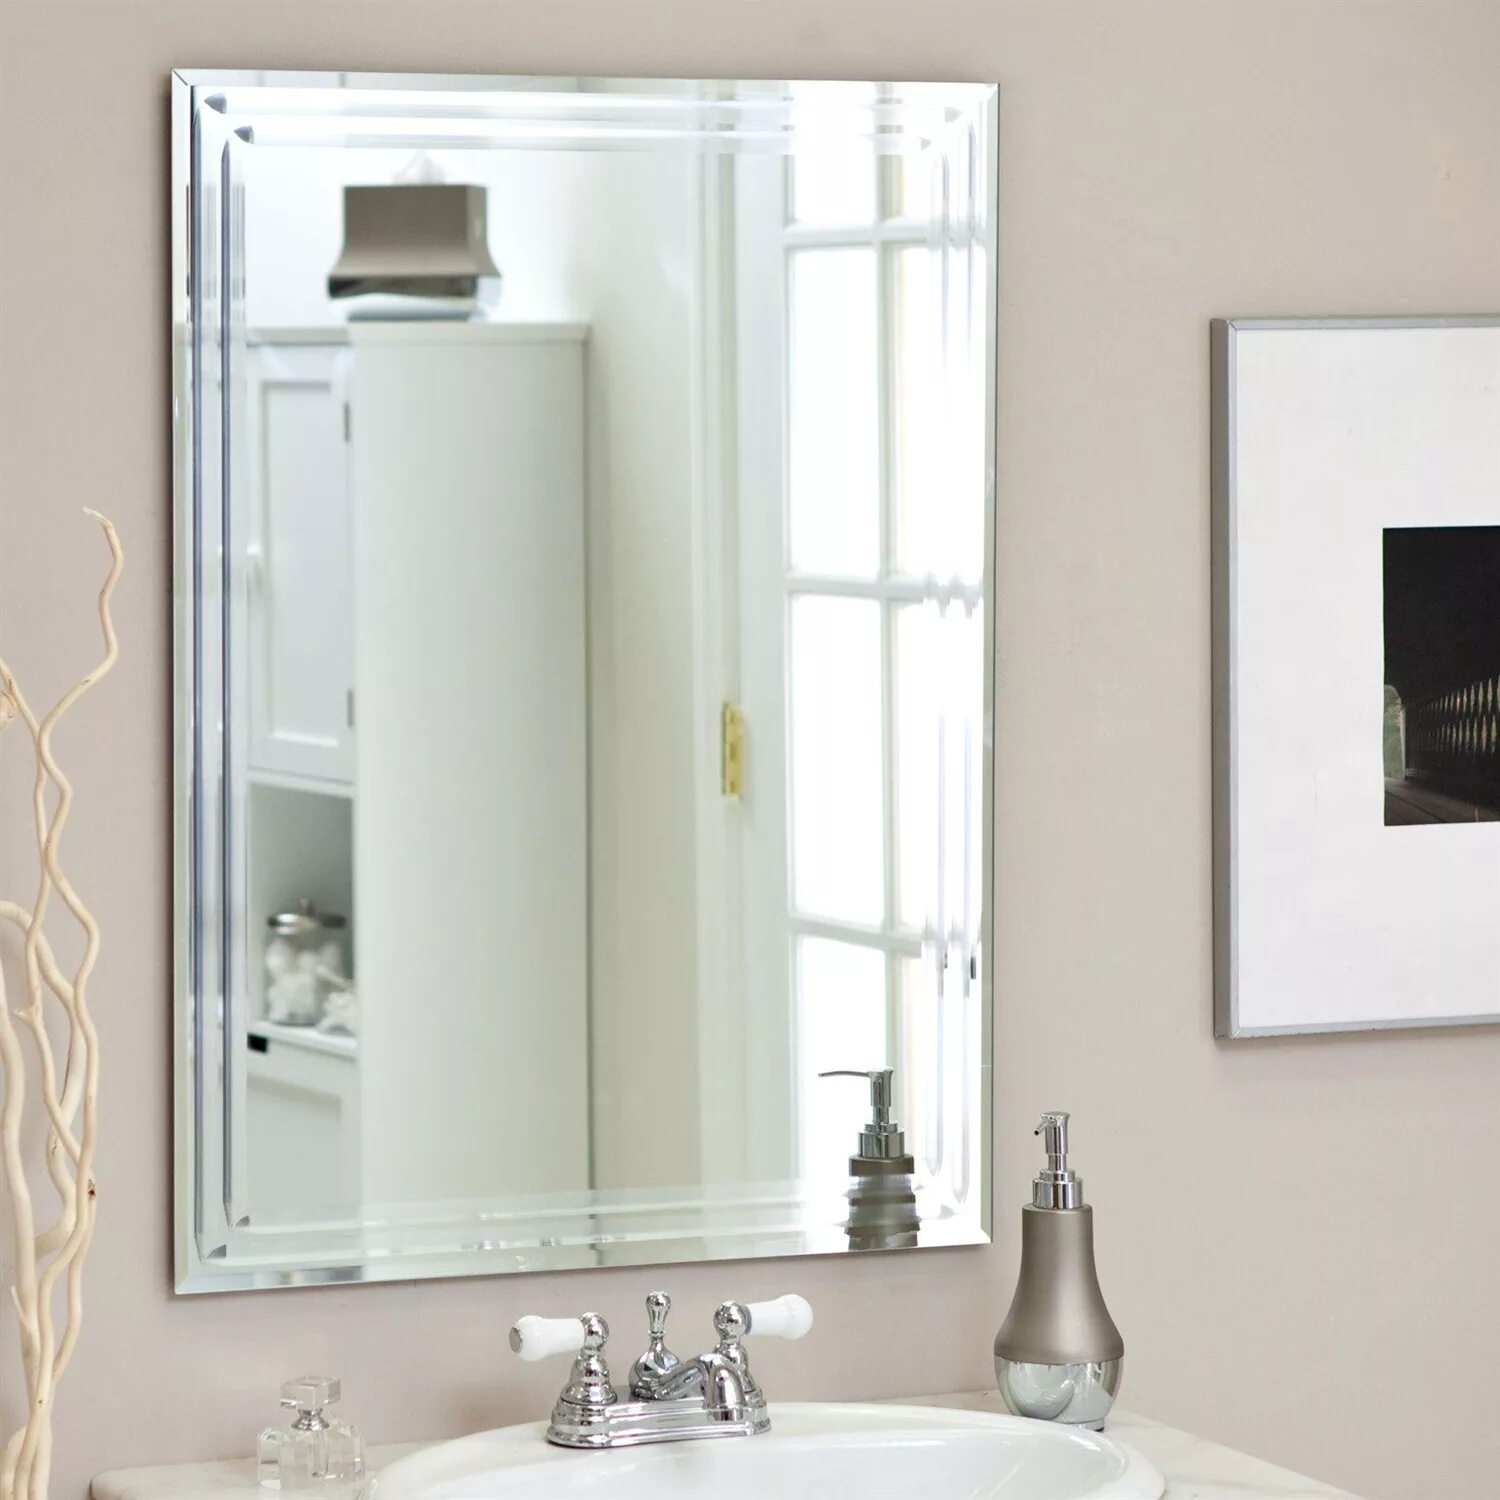 Зеркала в ванную белые. Зеркало в ванную. Зеркала для ванных комнат. Зеркало в интерьере ванной комнаты. Прямоугольное зеркало в ванной.